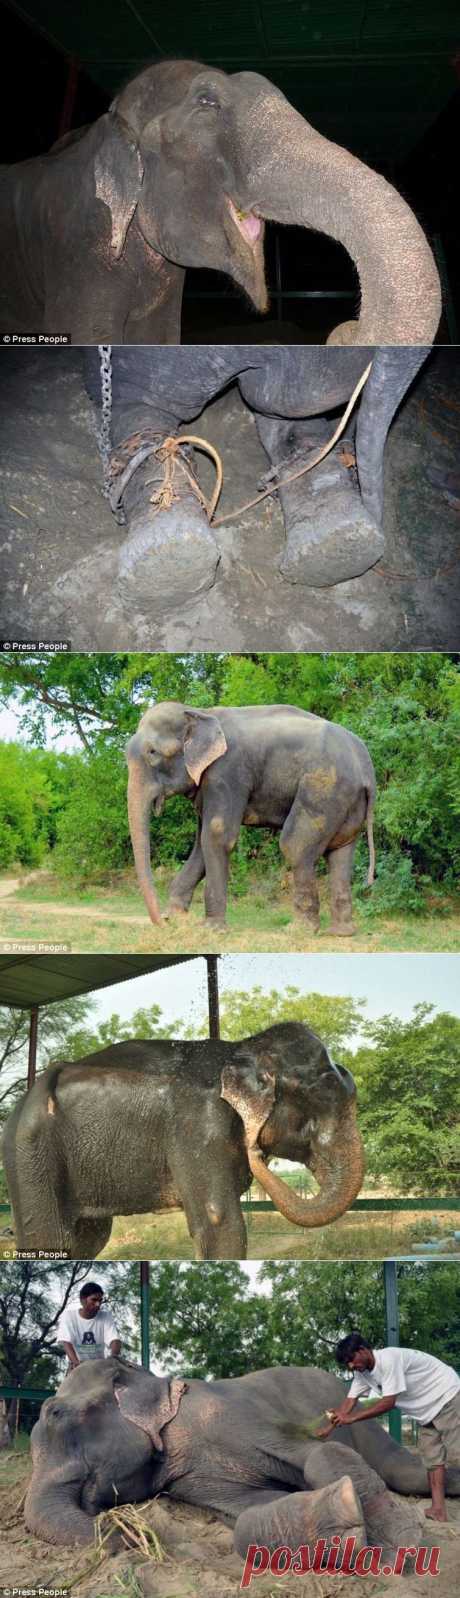 Спасение слона, проведшего 50 лет в неволе, который плакал от счастья • НОВОСТИ В ФОТОГРАФИЯХ